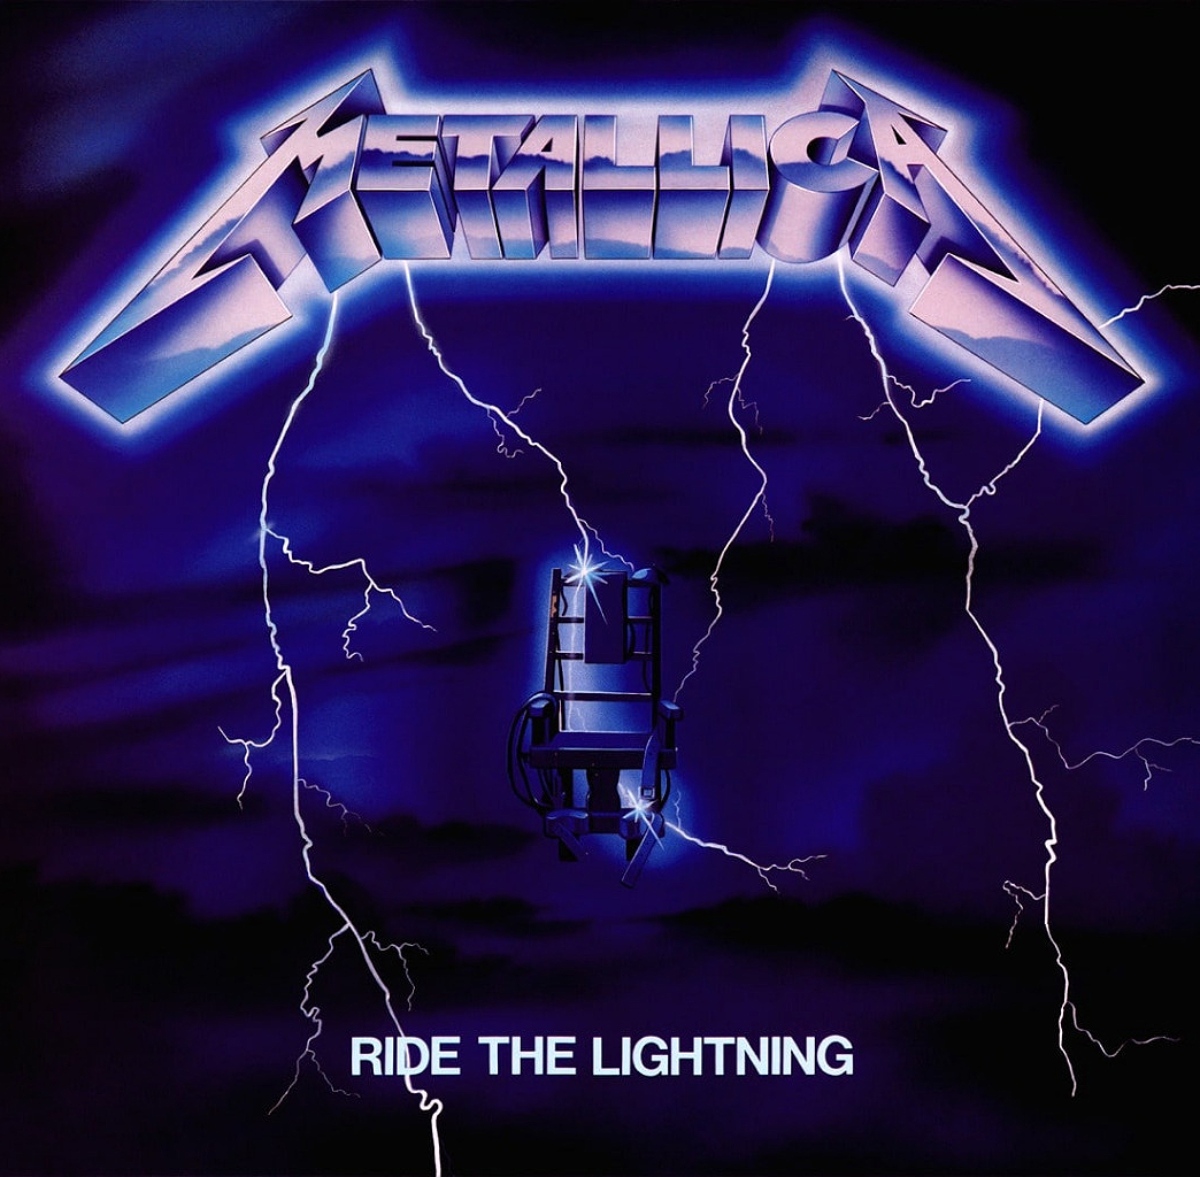 Couverture de l'album "Ride the Lightning" de Metallica